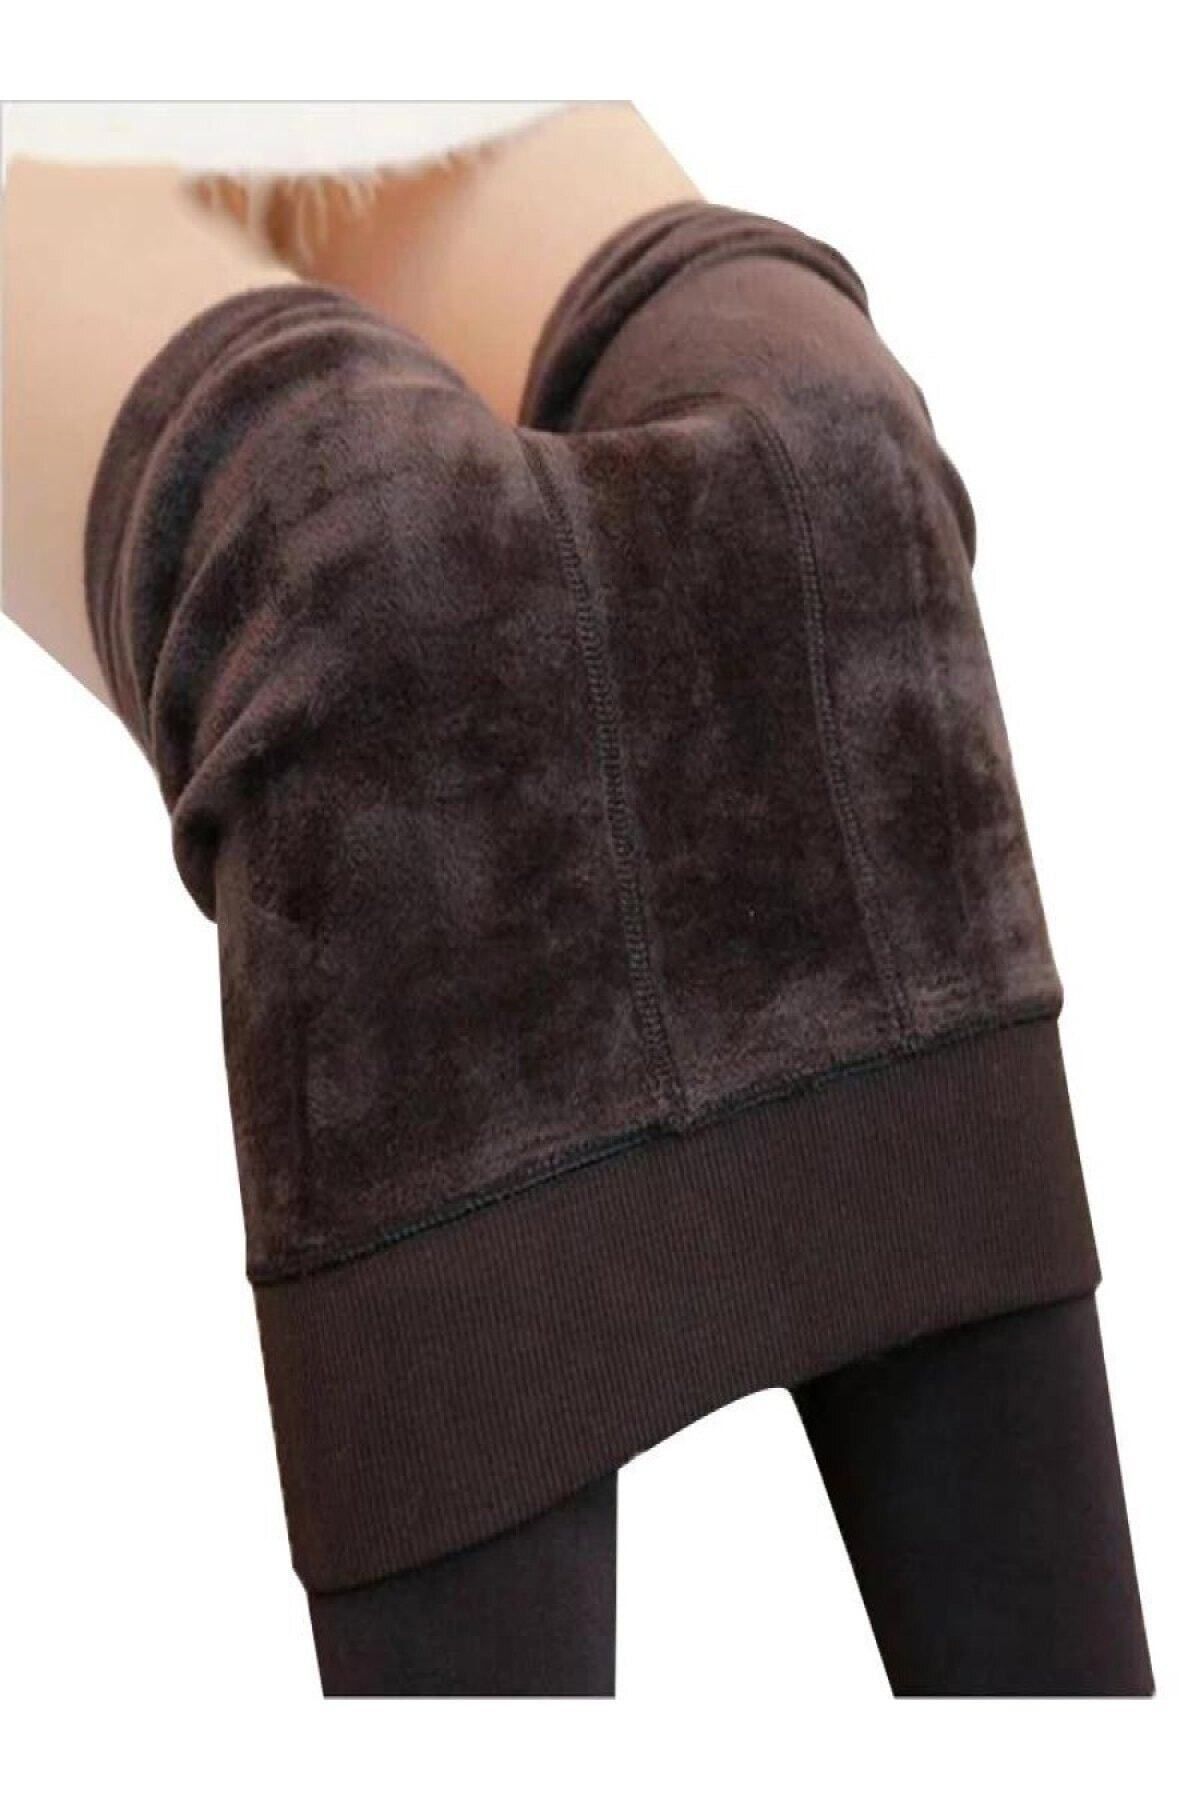 MİSTİRİK Ravena Model Sıcak Tutan Sıkılaştıran Tüylü Pelüşlü Dokuma Külotlu Çorap Siyah Renk